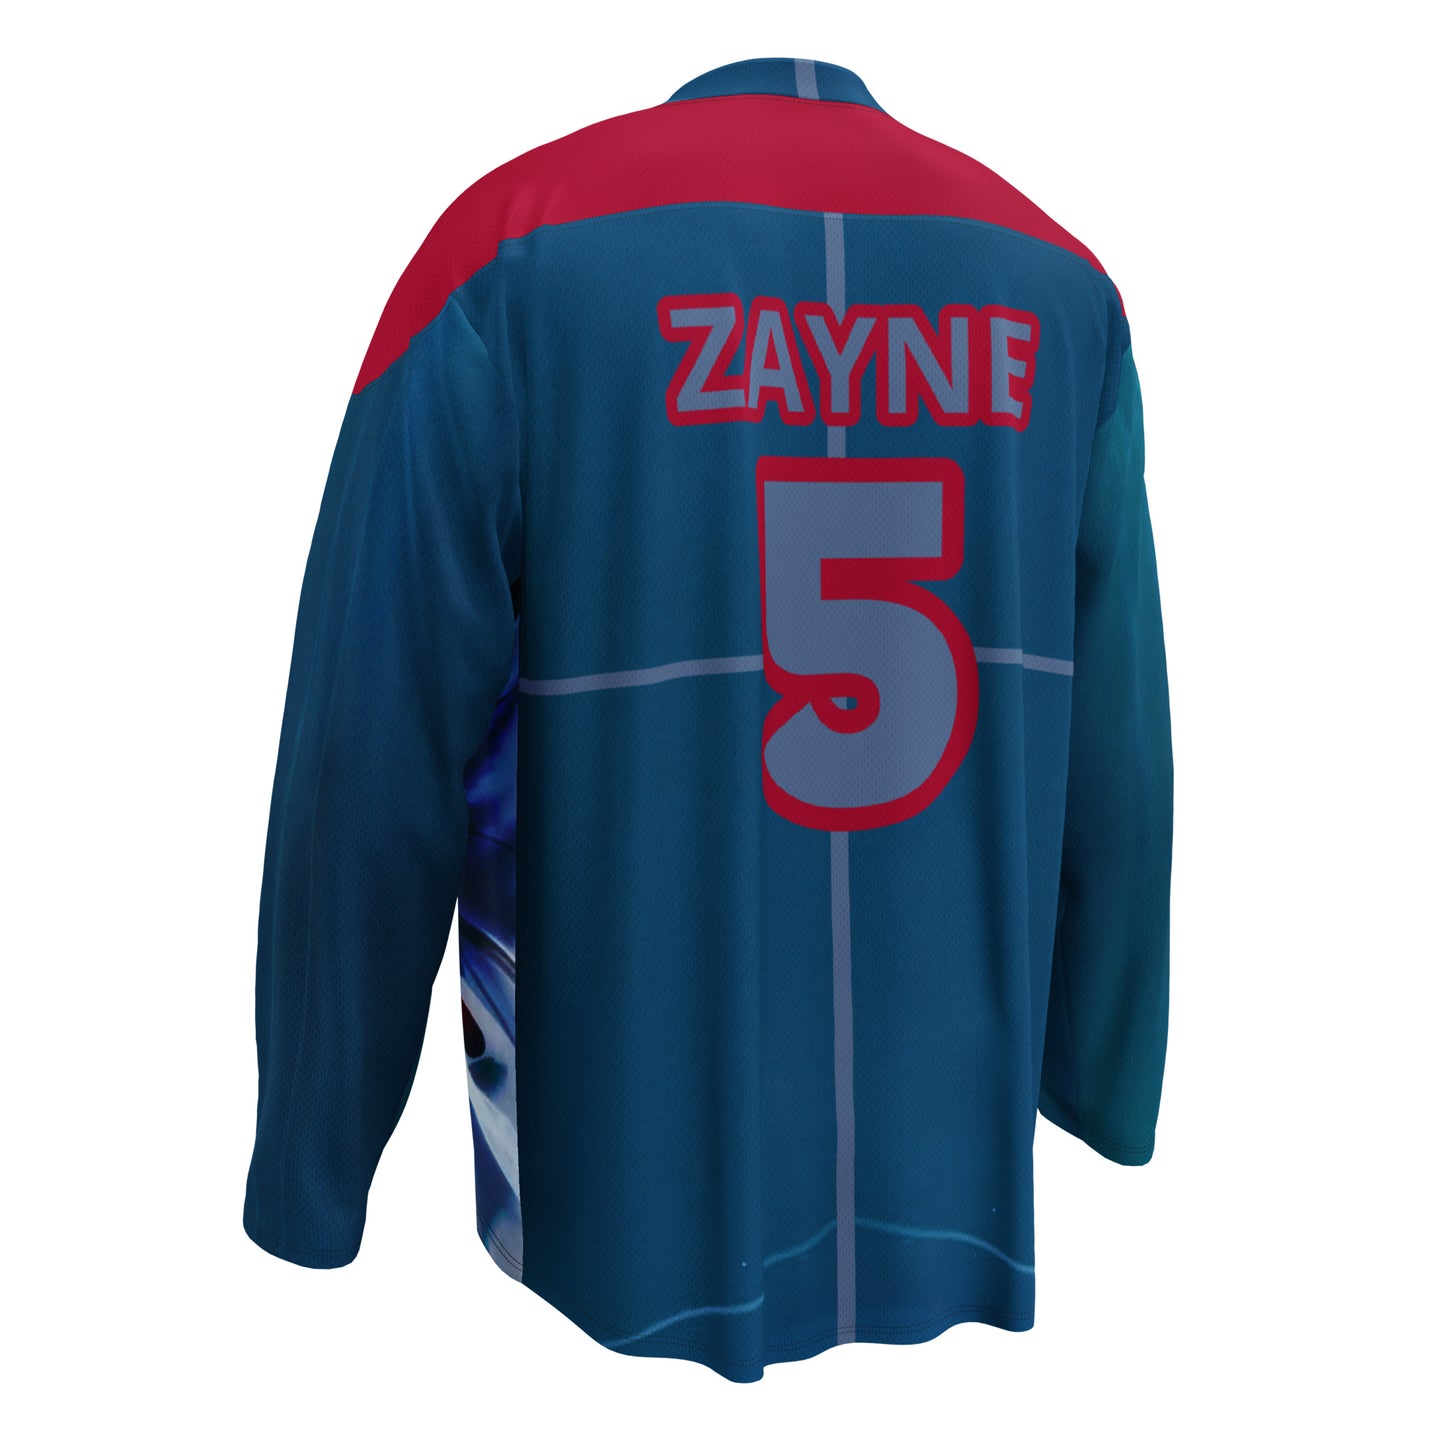 ZAYNE's 1st Birthday fan jersey